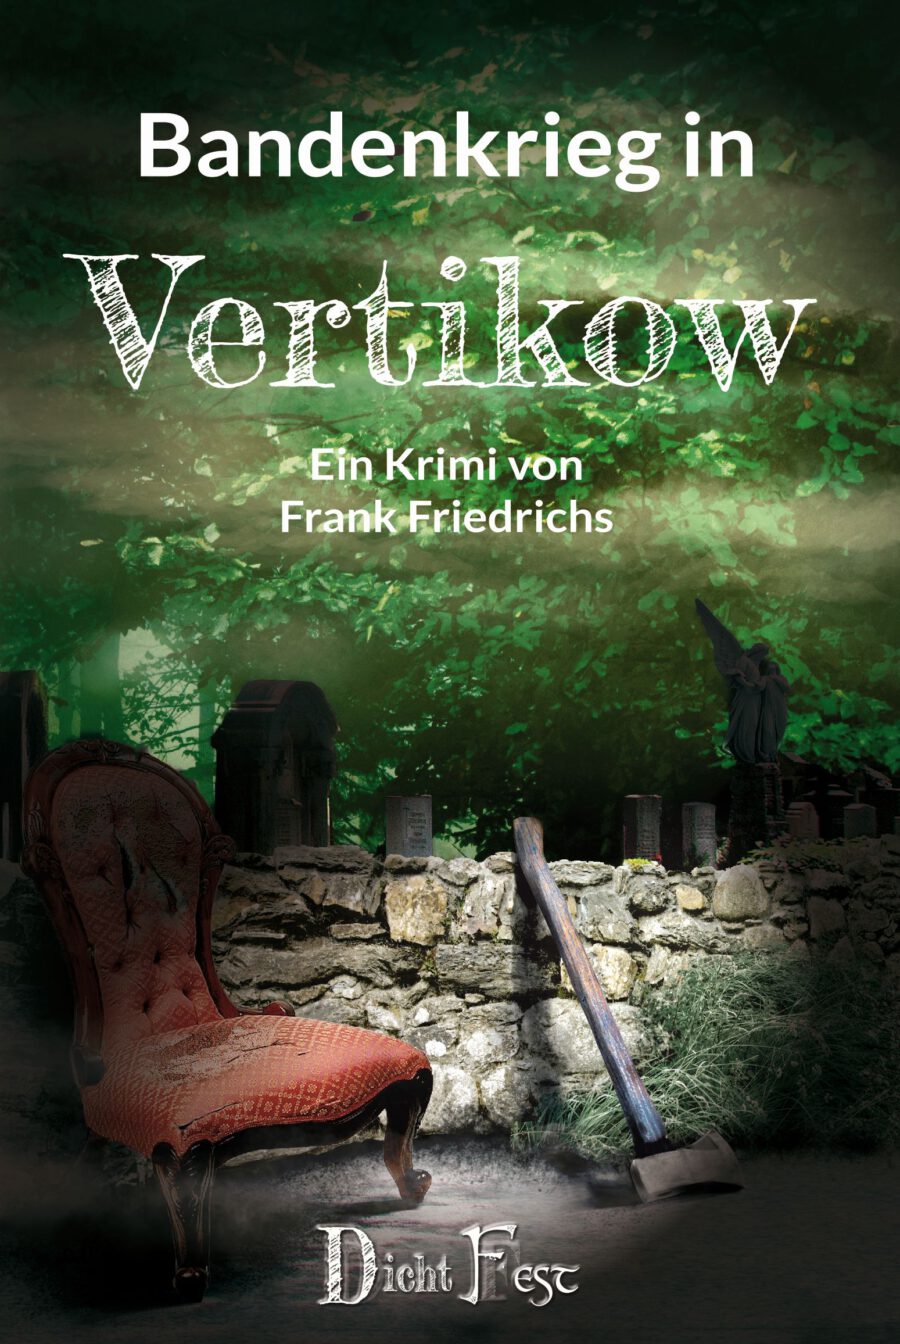 Frank Friedrichs: “Bandenkrieg in Vertikow”